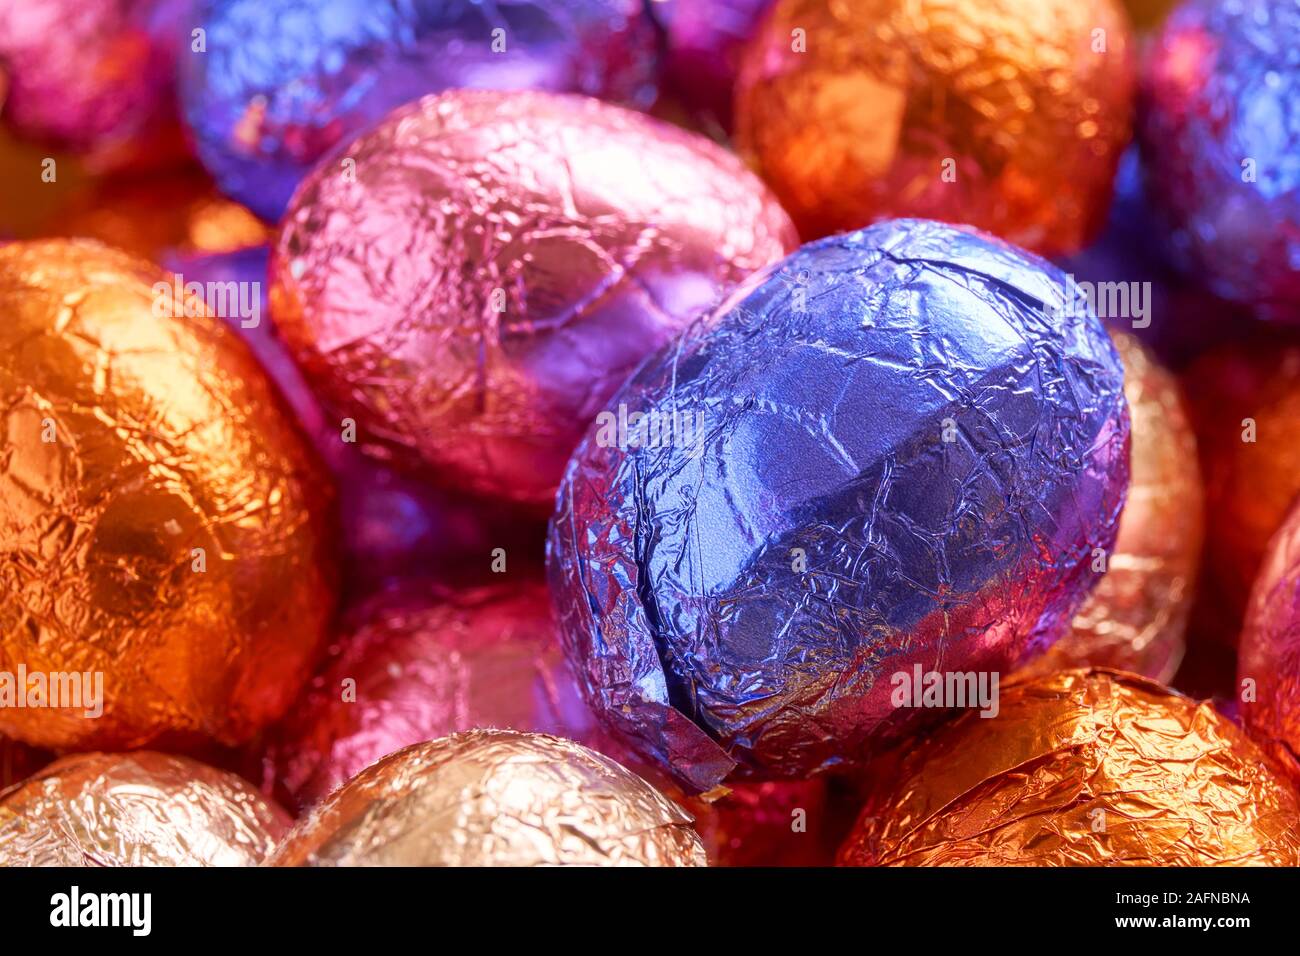 Molte uova di pasqua di cioccolato avvolto in blu, viola, arancione, rosa e lamina dorata wrap Foto Stock